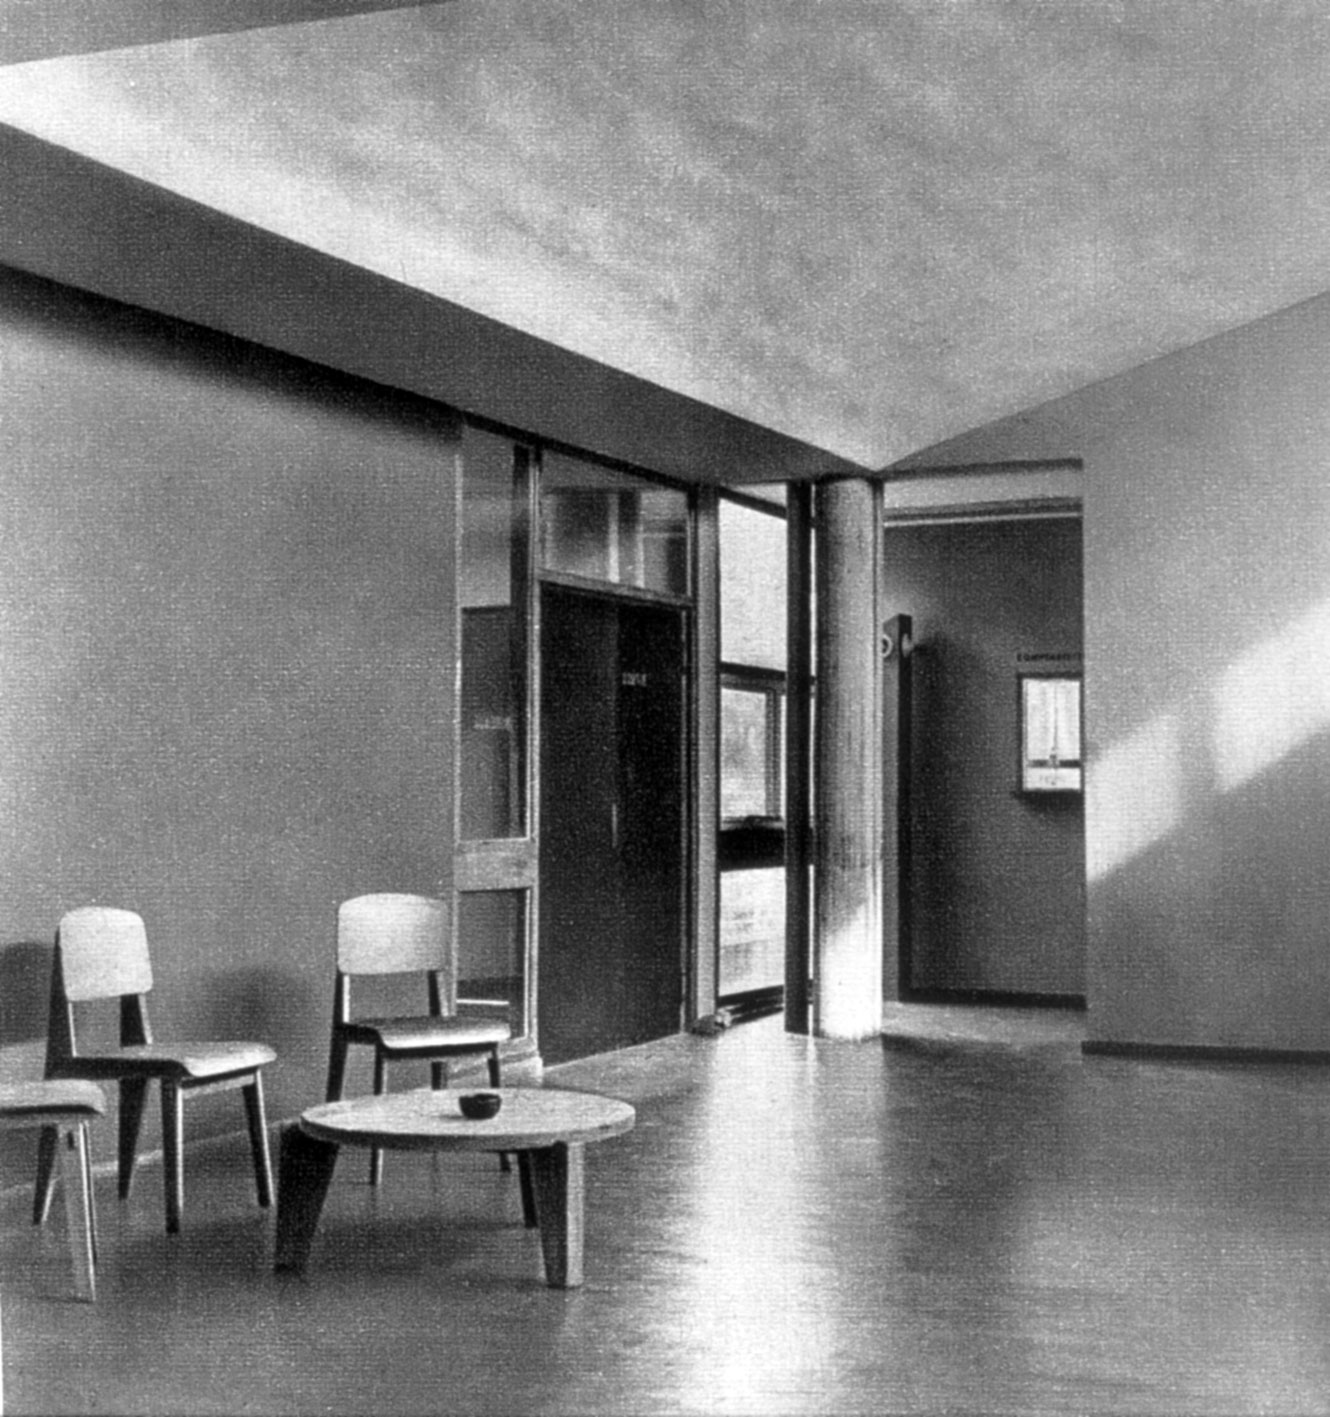 Usine Claude et Duval, Saint-Dié (Le Corbusier, arch., 1948-1951). Hall des bureaux, meublé avec des chaises Tout Bois et un guéridon n° 402. Publié dans <i>Domus,</i> avril 1953.